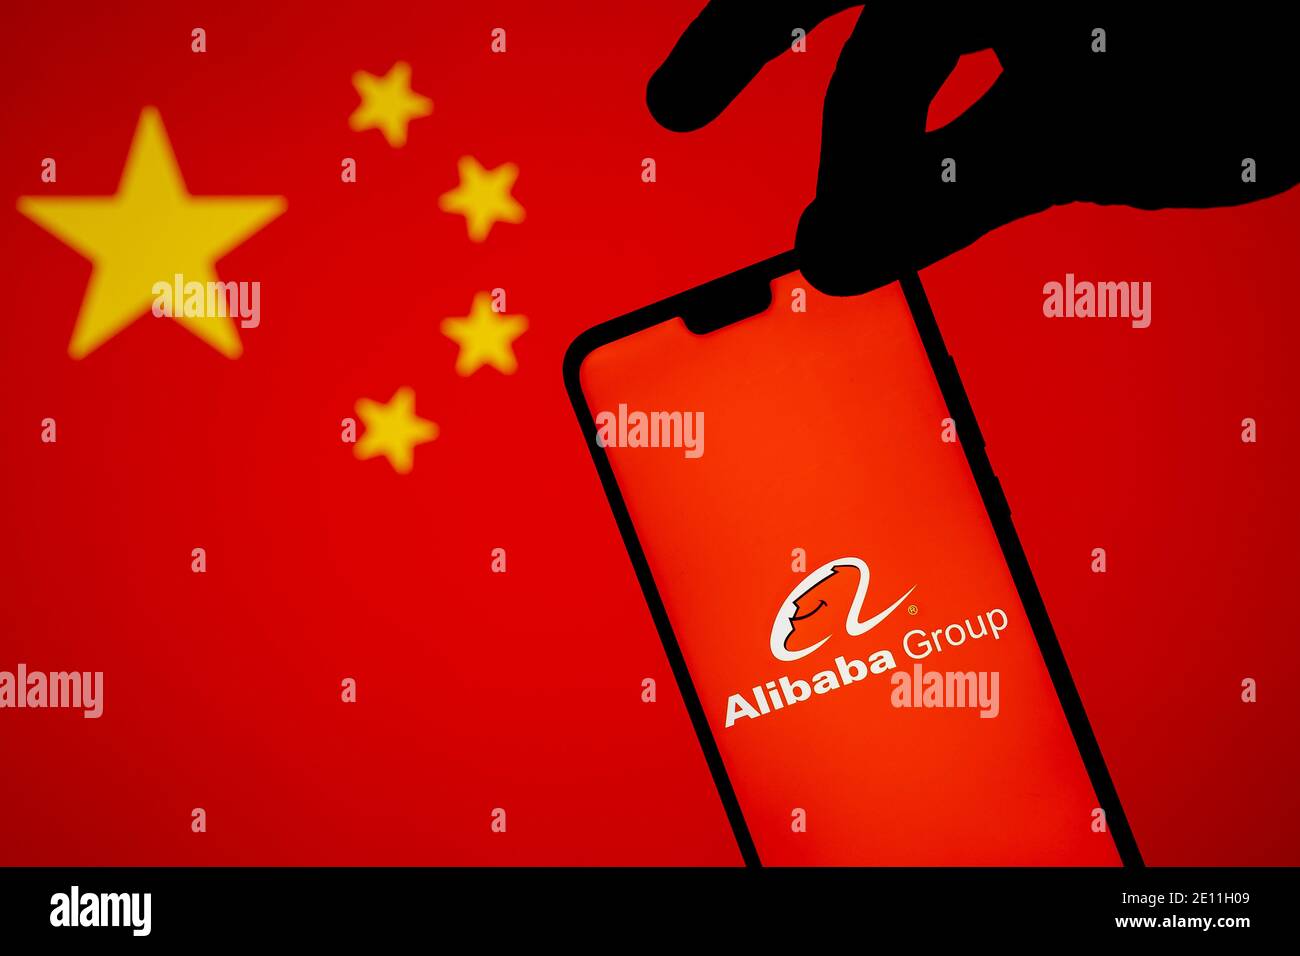 Stafford, Royaume-Uni - janvier 3 2021: Logo Alibaba sur une silhouette de smartphone qui est tenue sur le bord. Concept d'enquête gouvernementale Banque D'Images